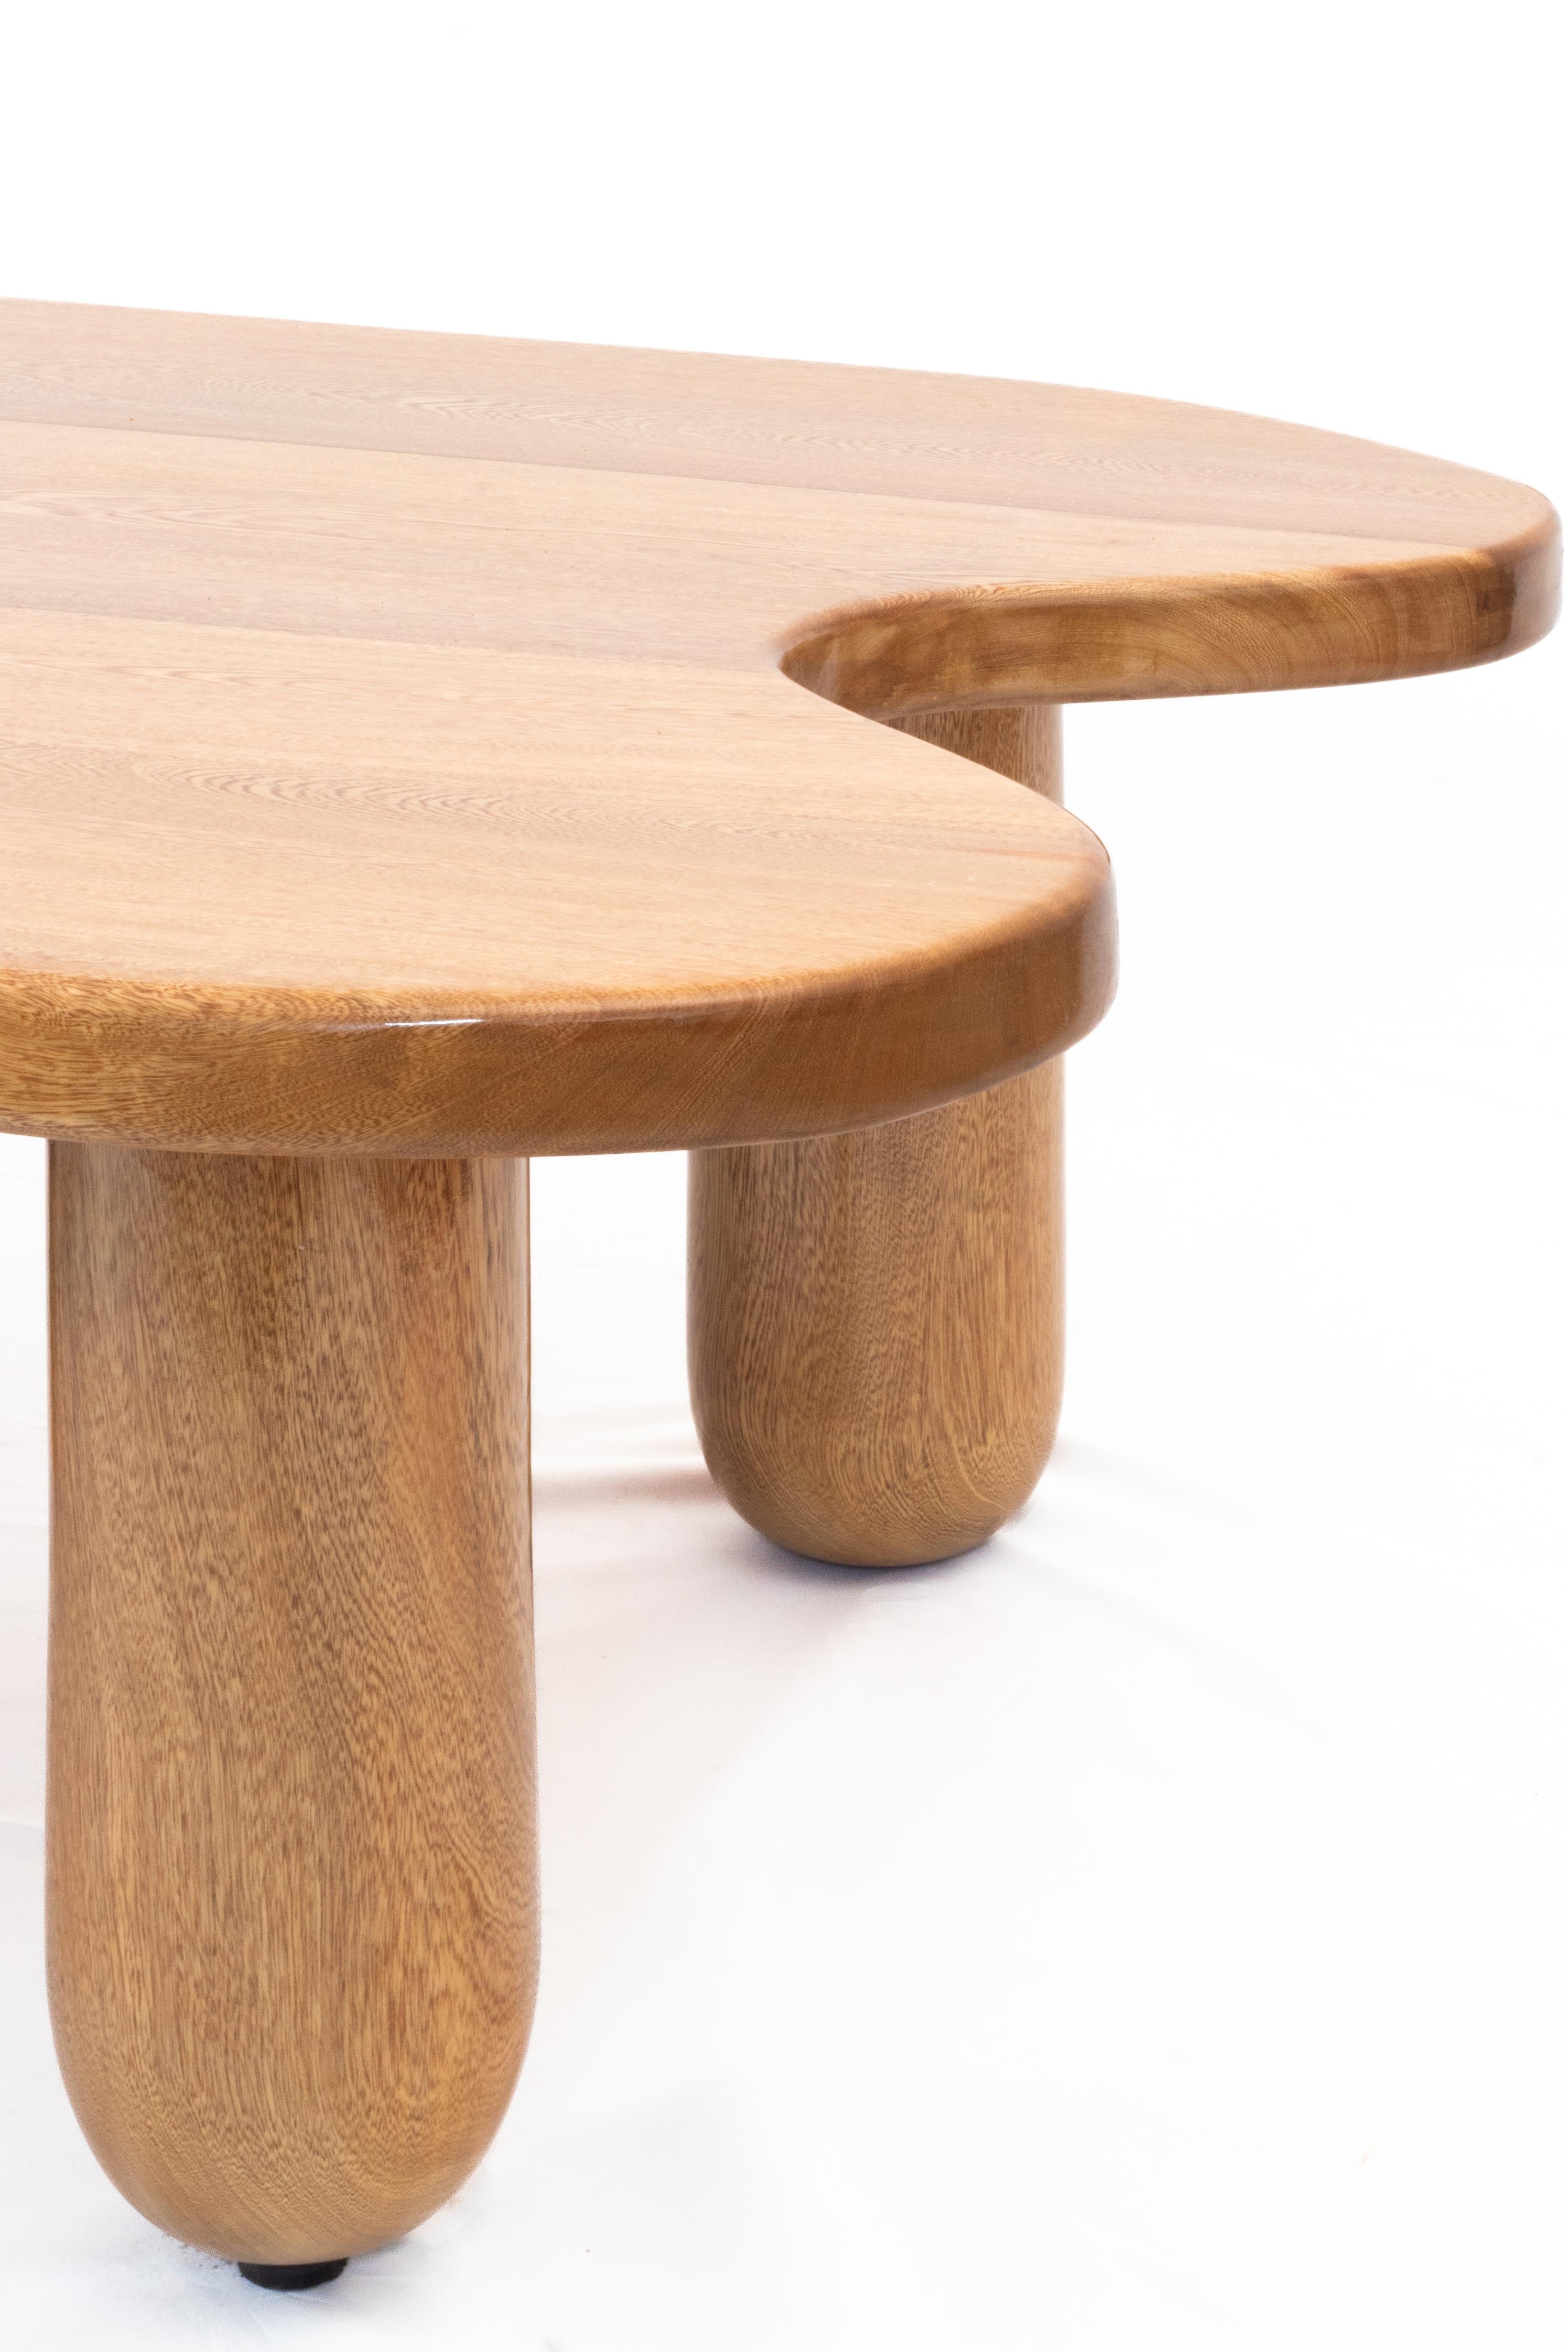 Organique Table Lago en Oak Contemporary massif ; formes organiques ; une table basse contemporaine. en vente